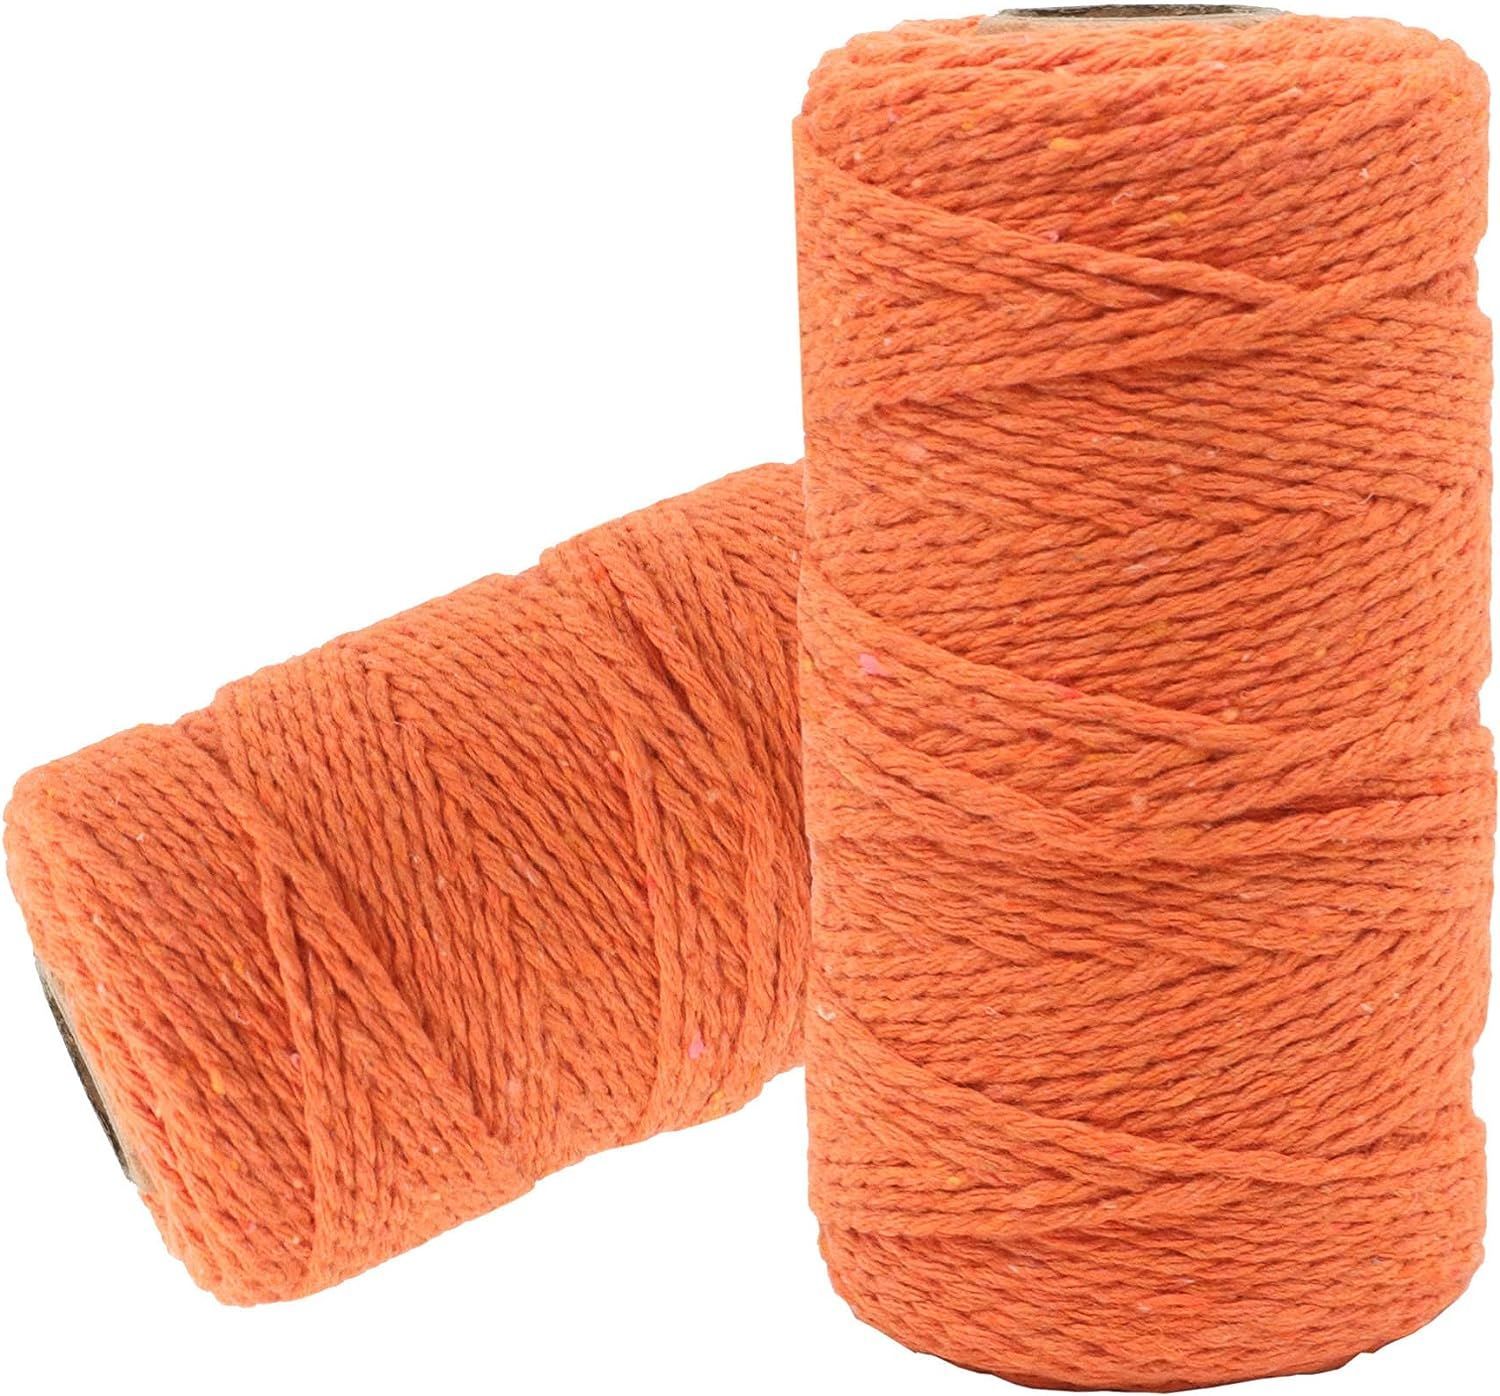 Шпагат хлопковый Kraftcom, 2мм х 50м (2шт), цвет - оранжевый / шпагат для вязания